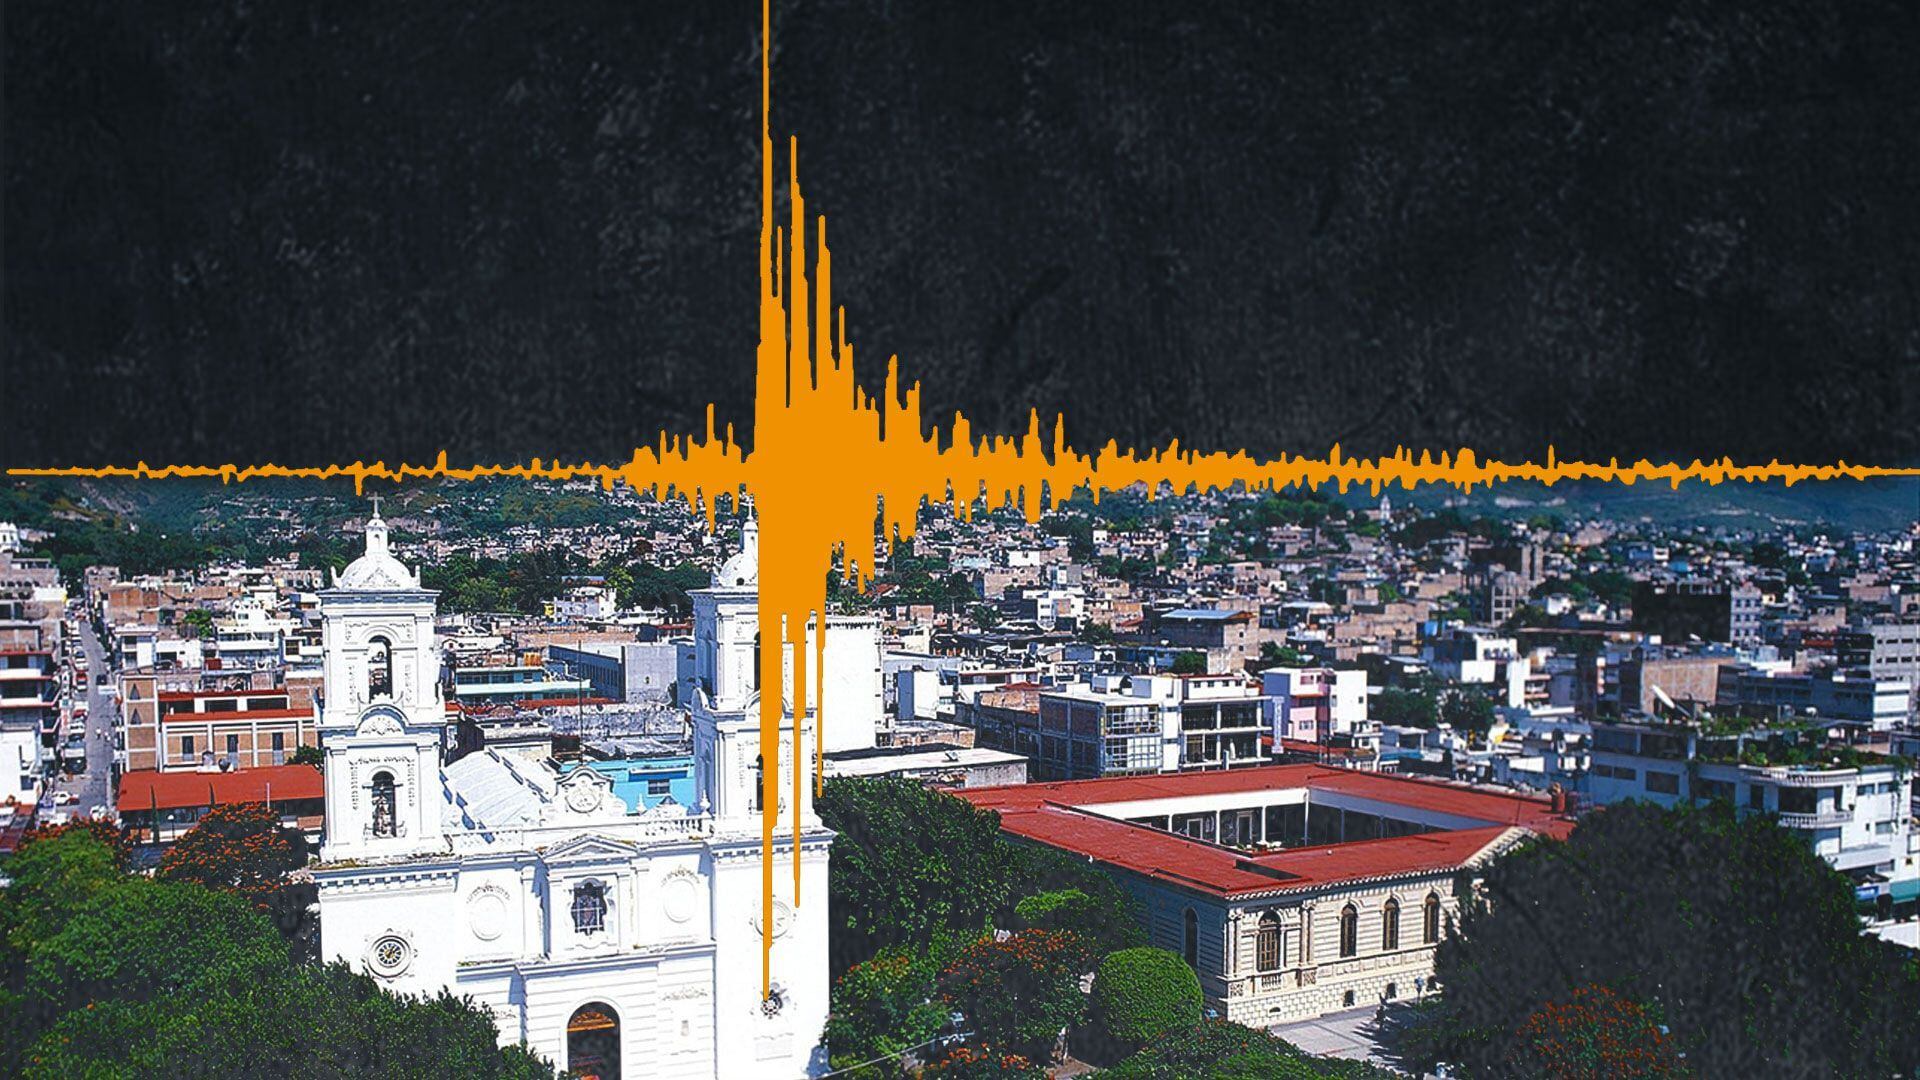 México es un país sísmico por lo que es importante mantenerse alerta ante movimientos telúricos. (Infobae)